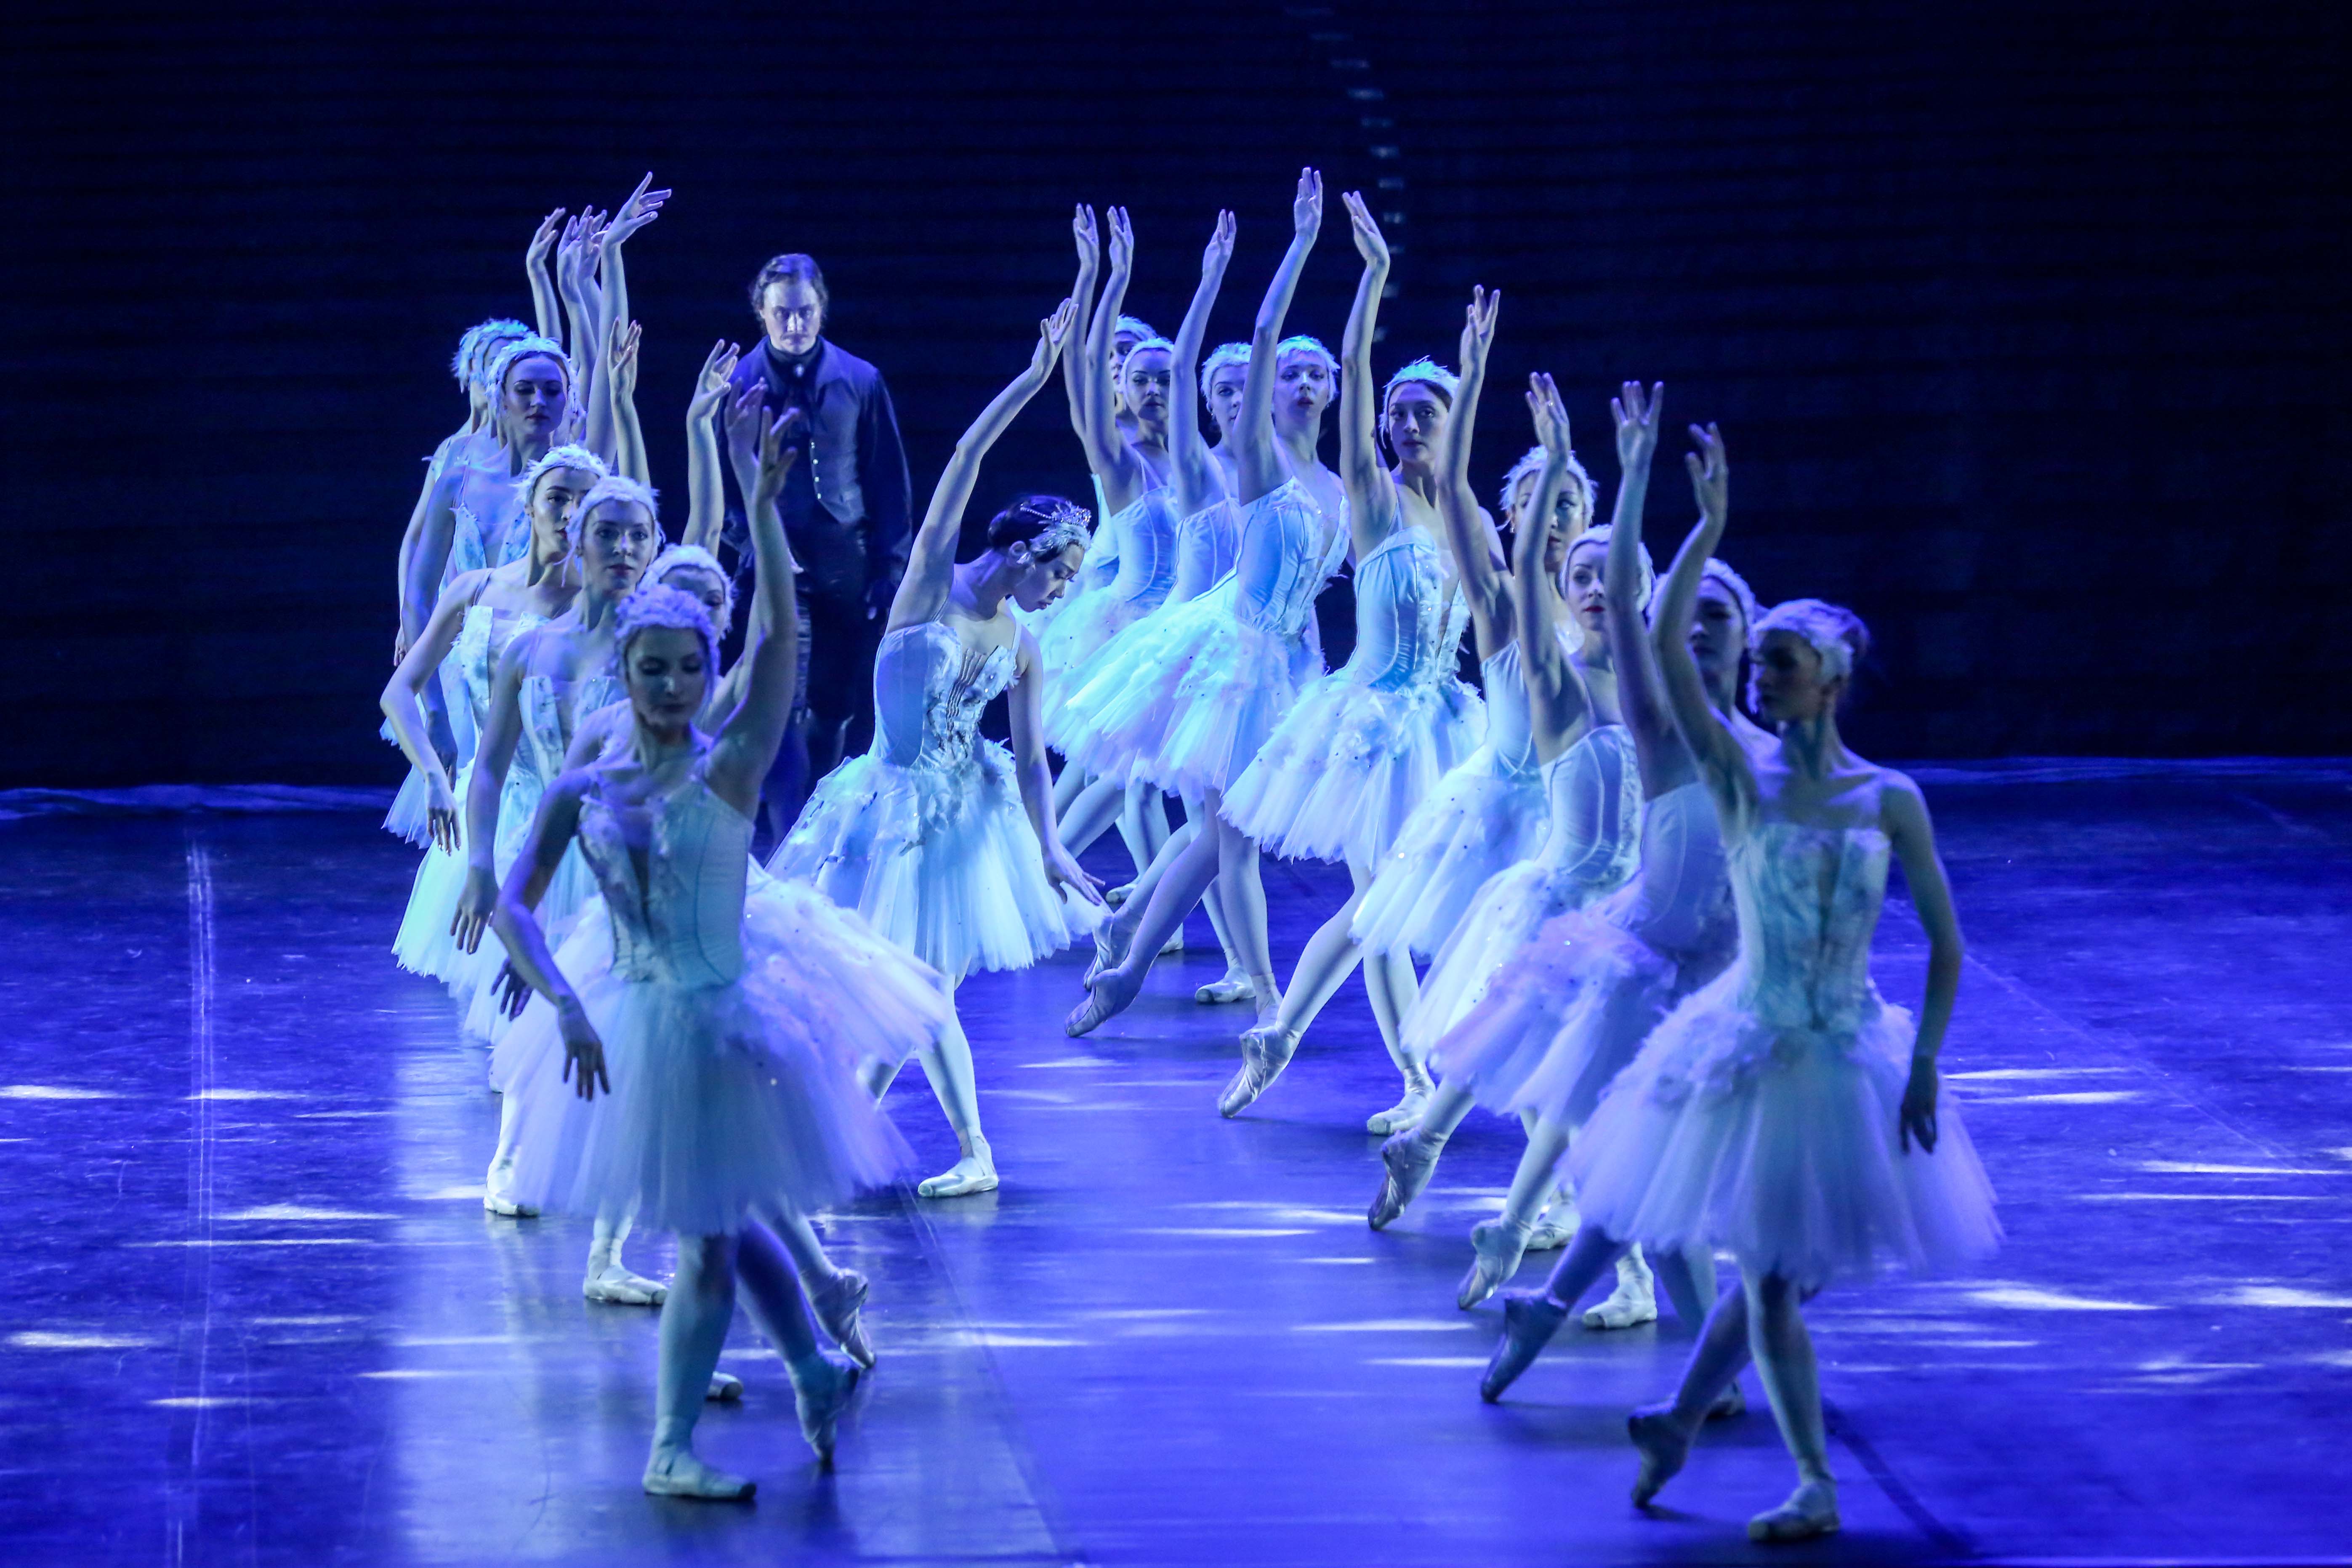 中国国际芭蕾演出季| 中央芭蕾团献上芭蕾史上的瑰宝《舞姬》